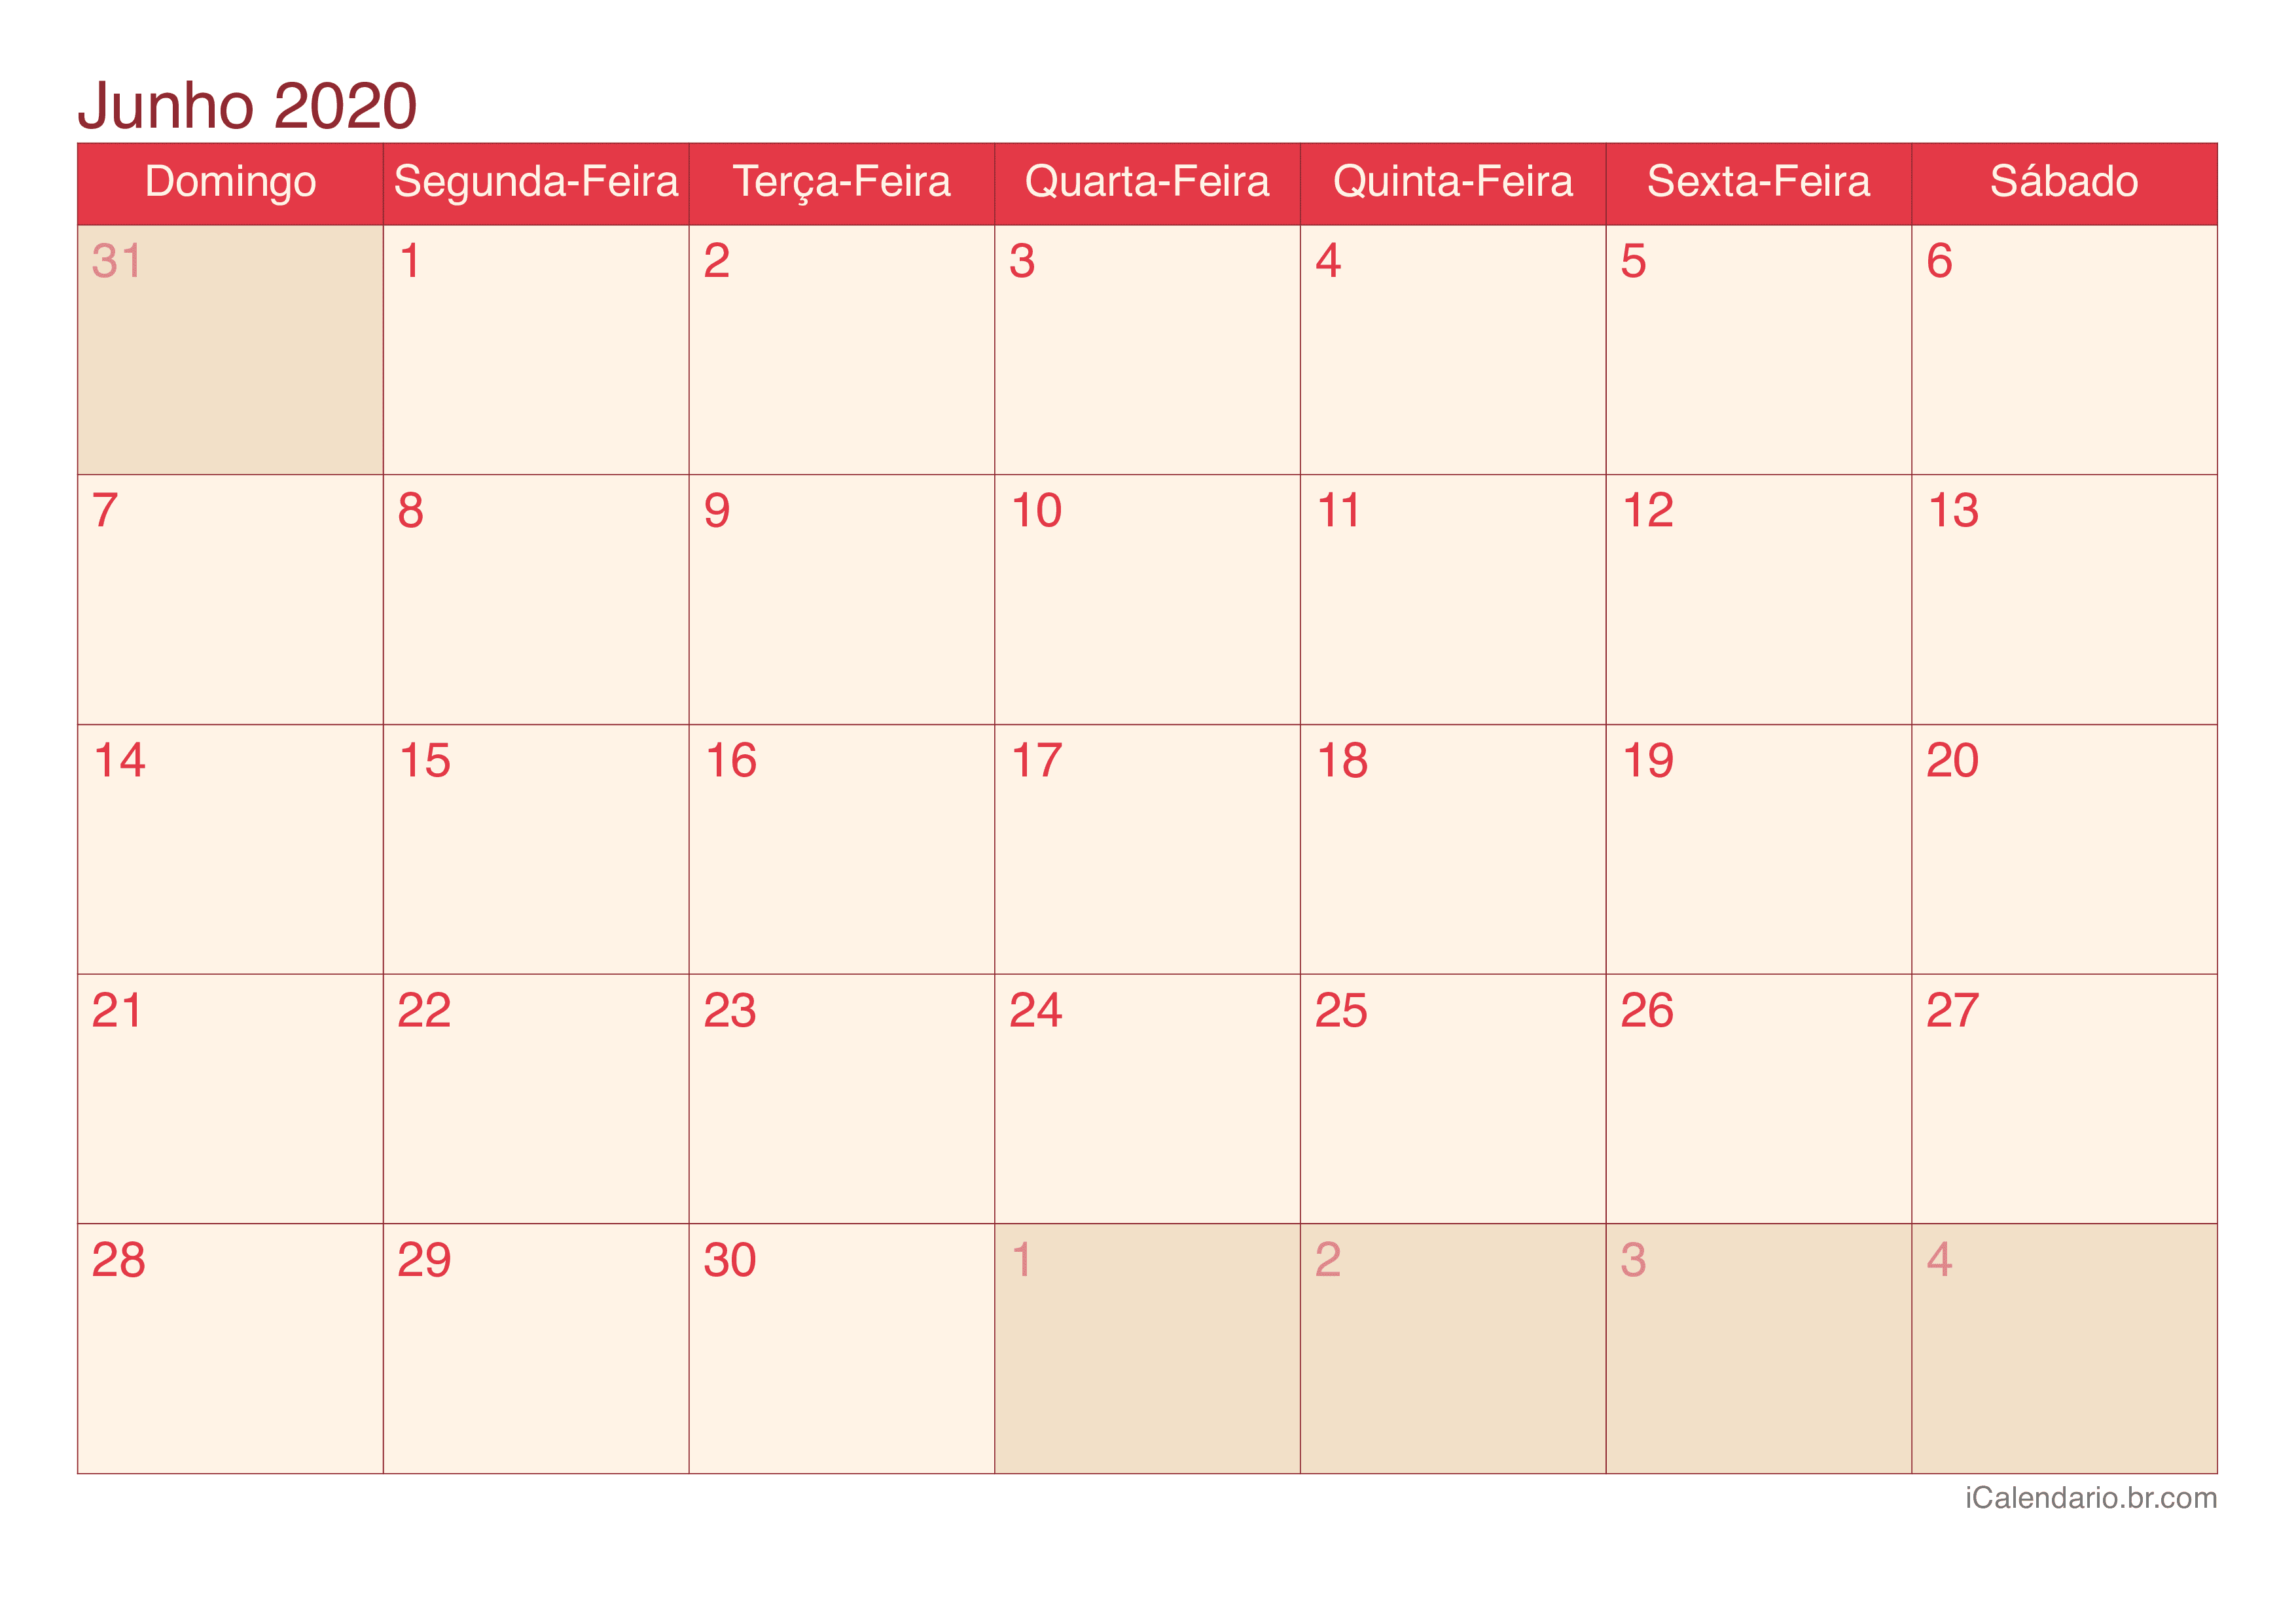 Calendário de junho 2020 - Cherry